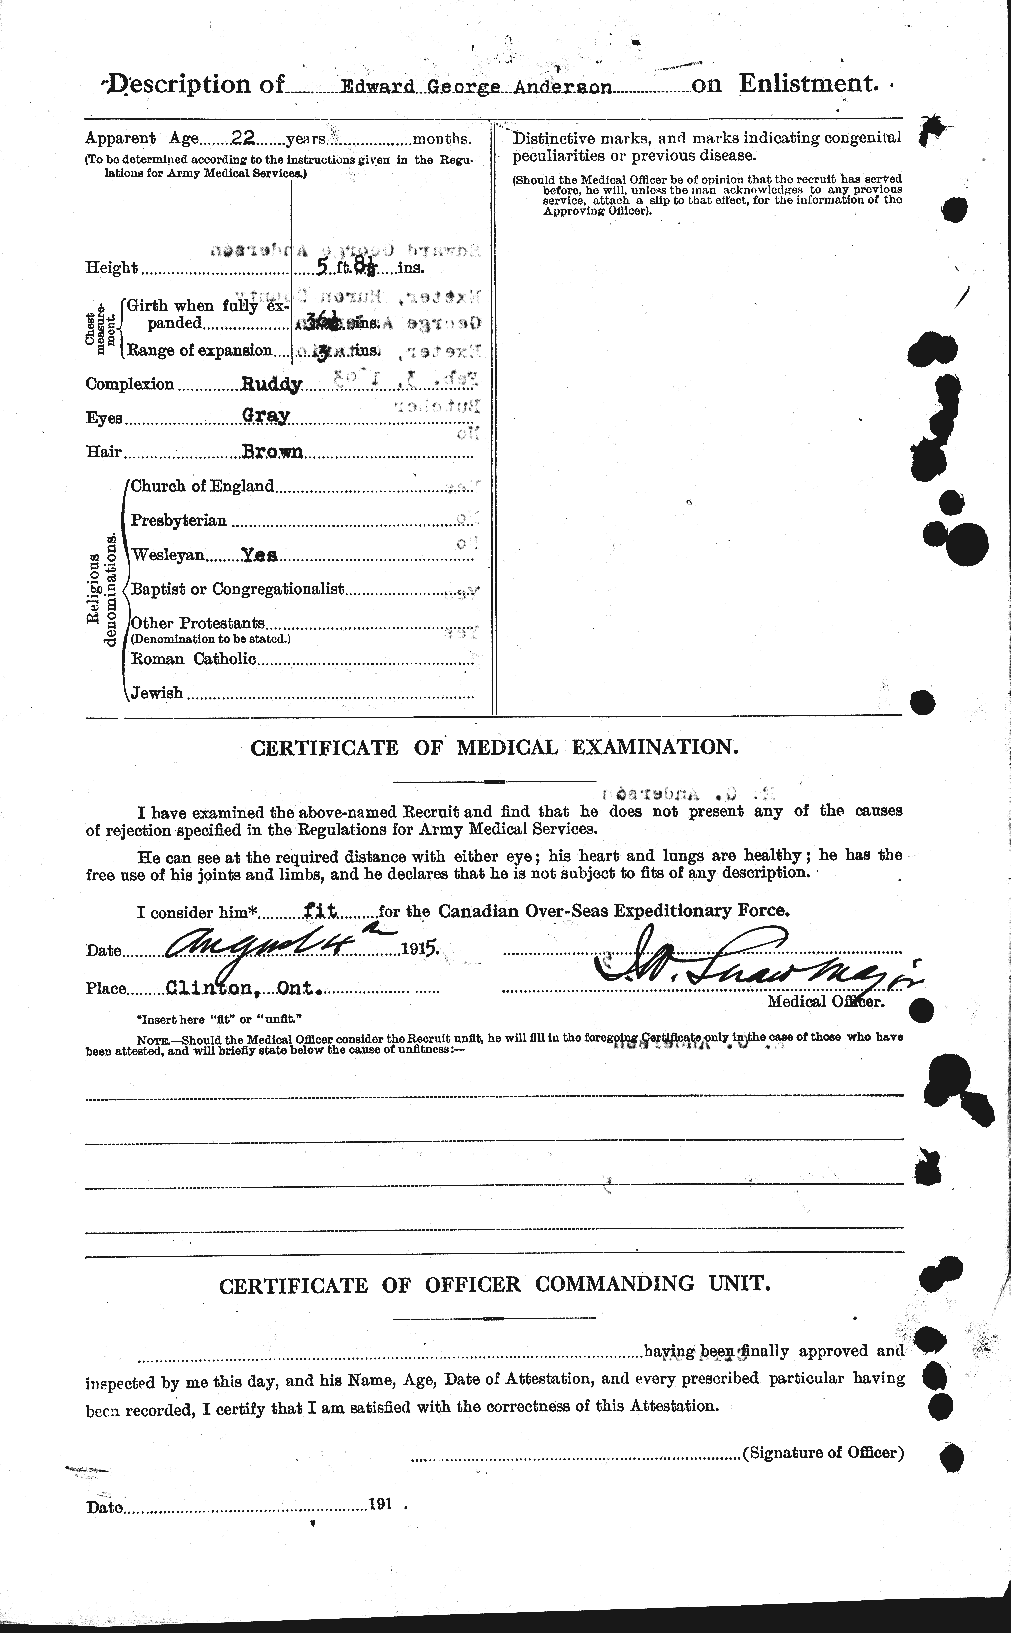 Dossiers du Personnel de la Première Guerre mondiale - CEC 209934b